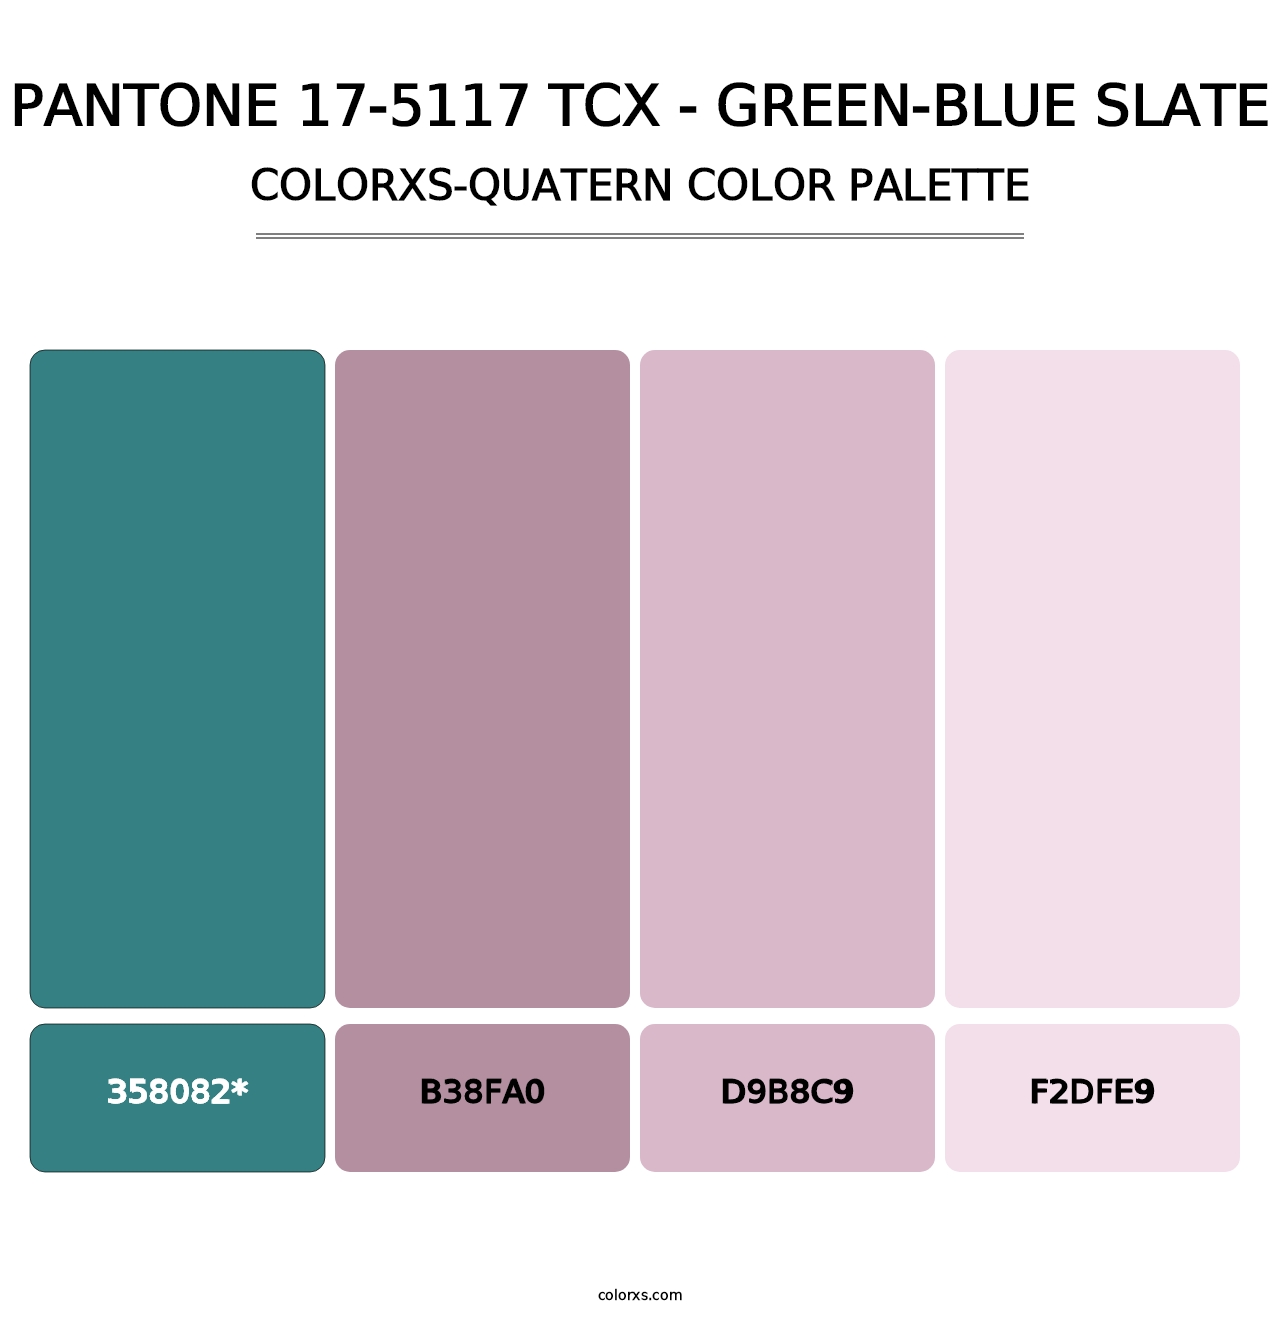 PANTONE 17-5117 TCX - Green-Blue Slate - Colorxs Quad Palette